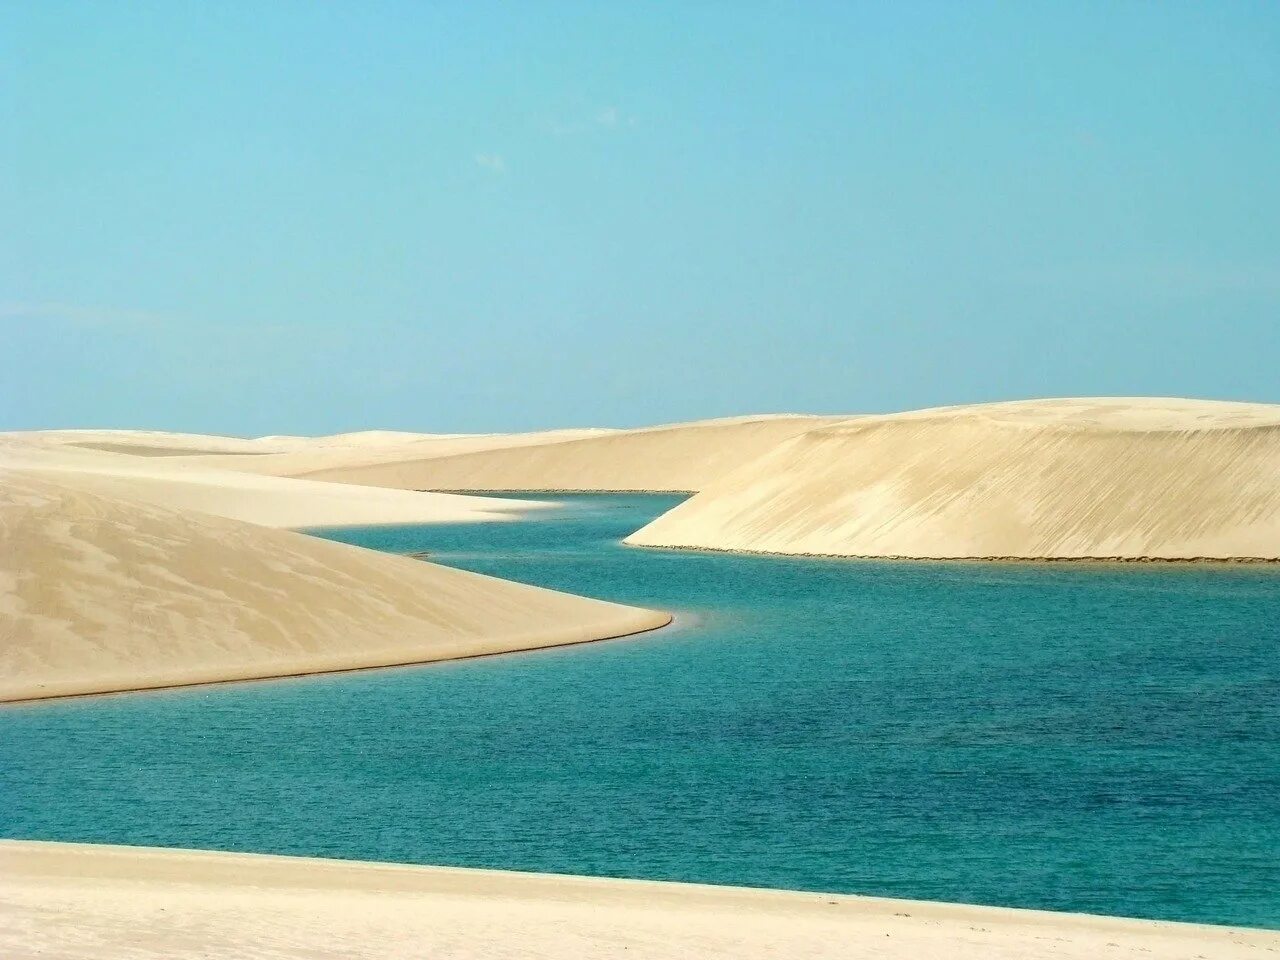 Реки саудовской аравии. Озеро Ленсойс Мараньенсес. Парк Ленсойc-Мараньенсес, Бразилия. Оазисы Саудовской Аравии. Оазис Аравийской пустыни.